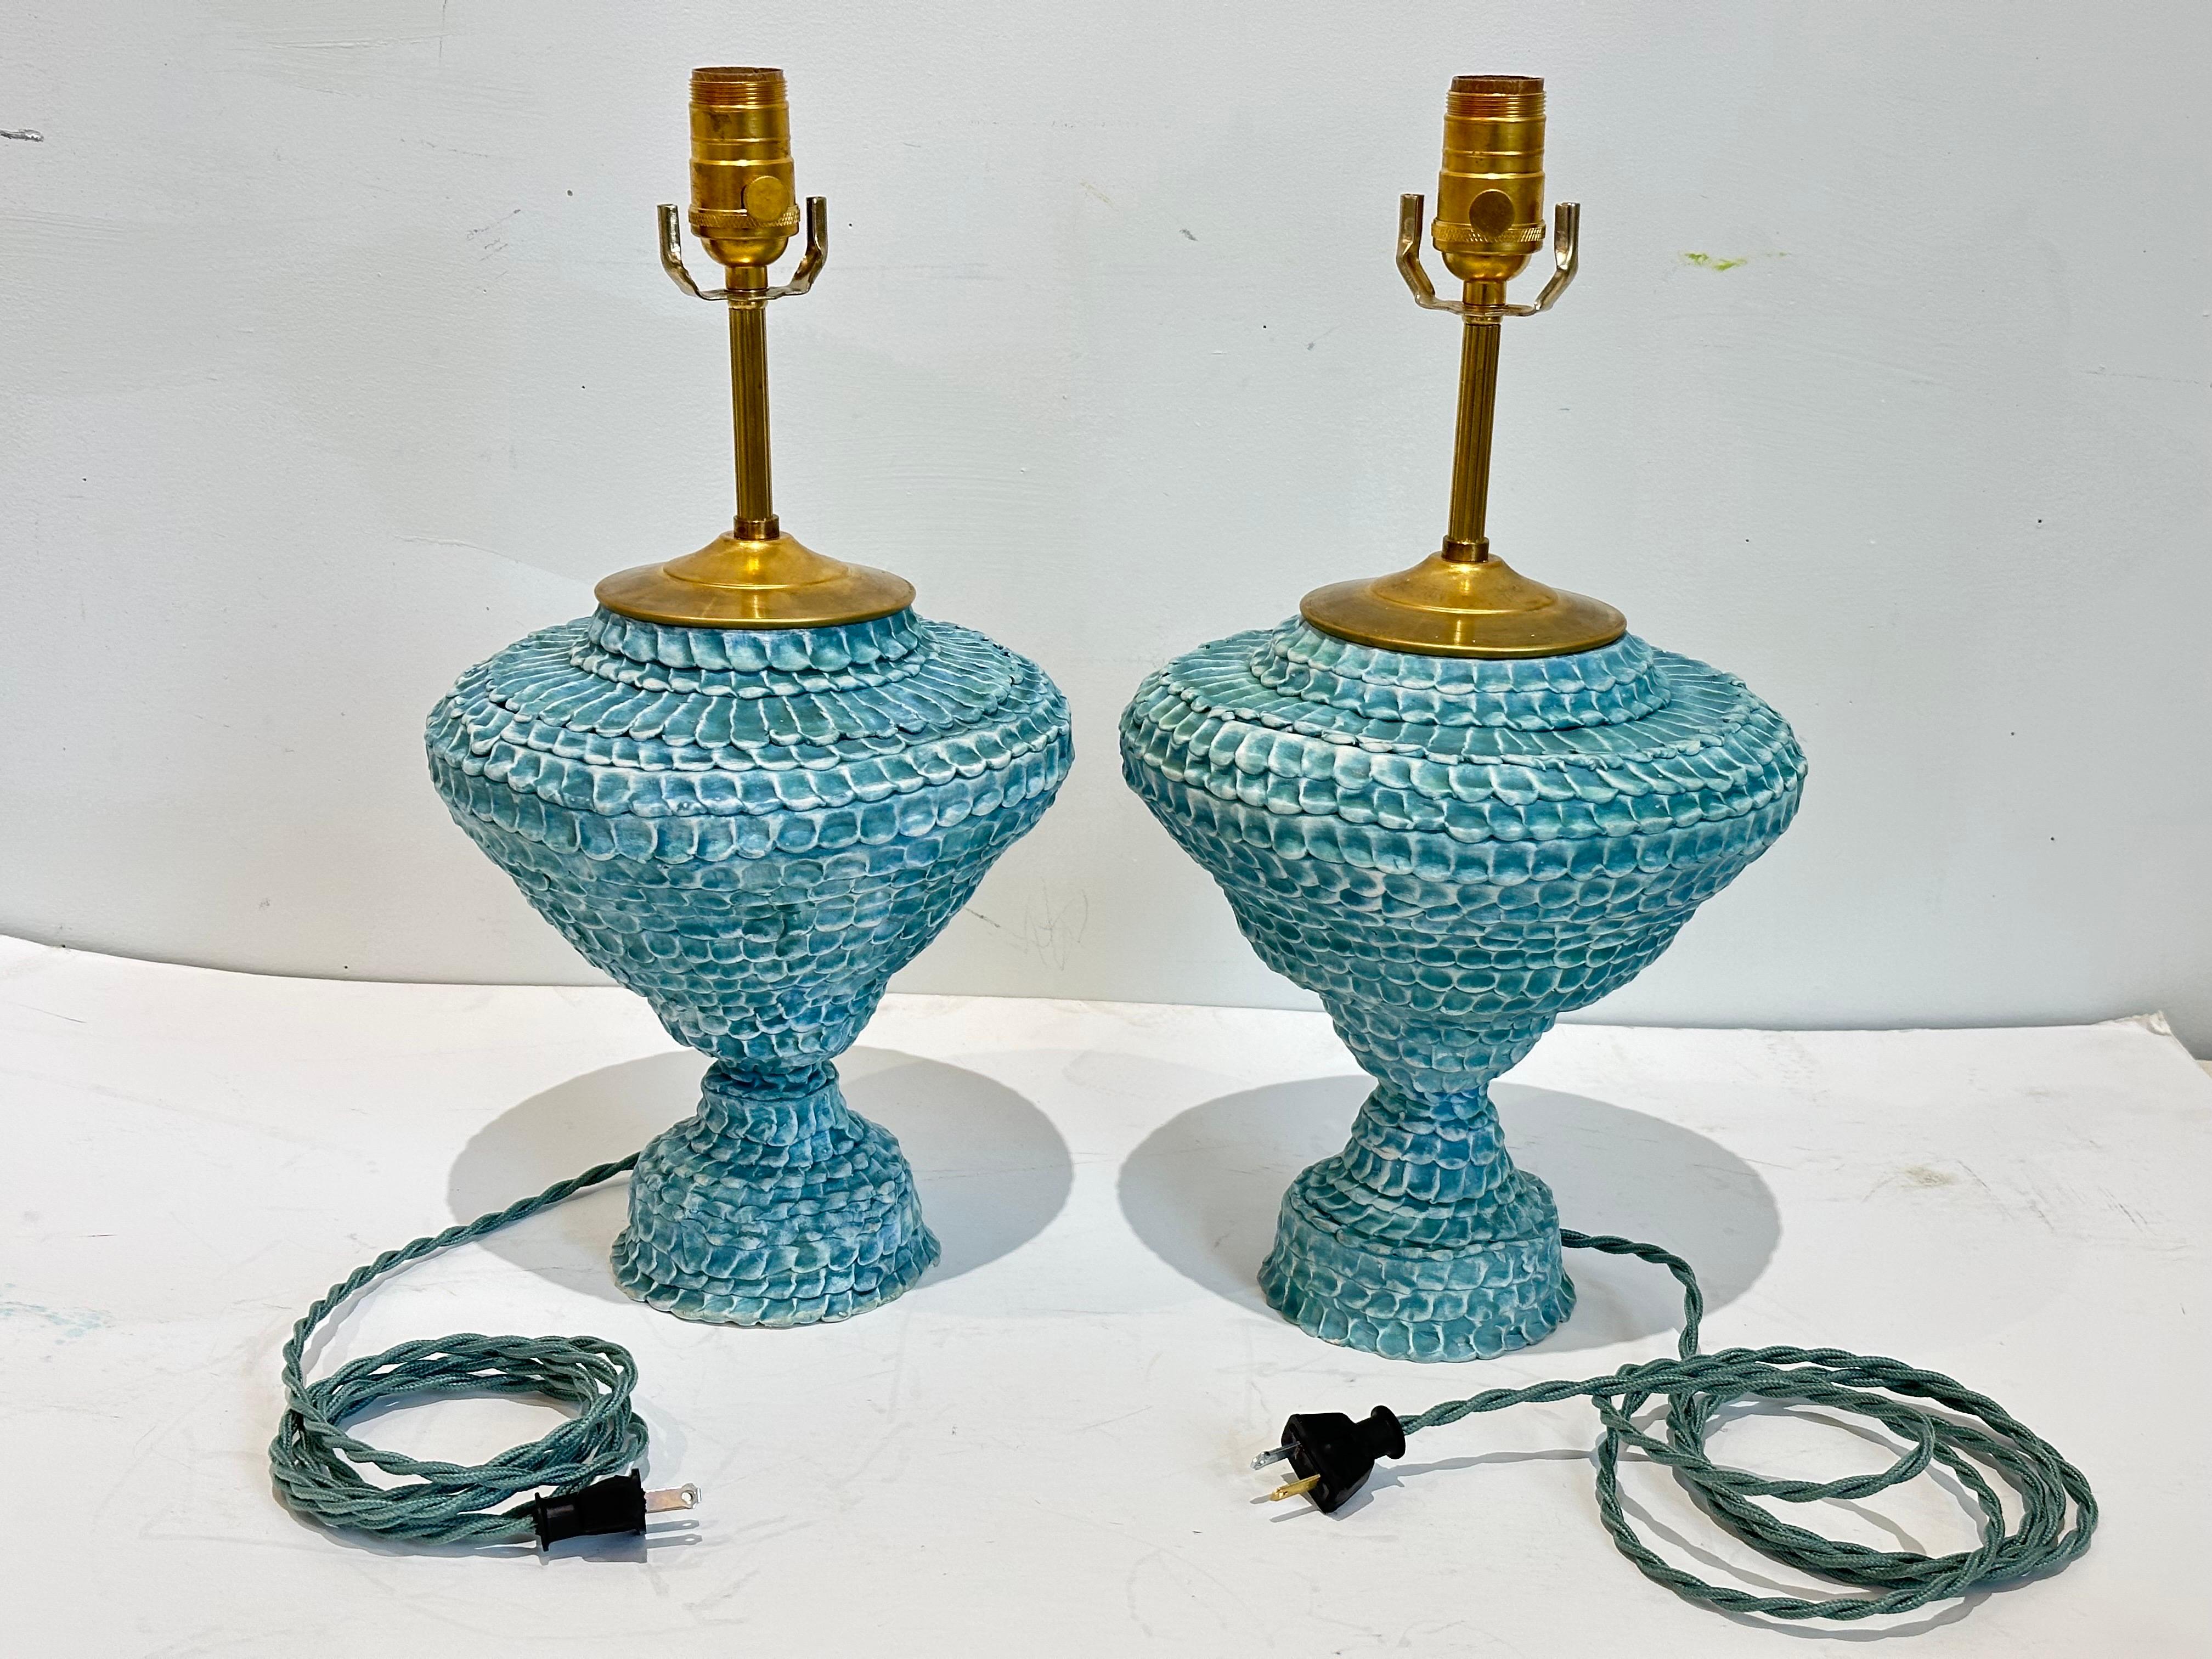 Lampes en forme d'urne en céramique fabriquées à la main et de couleur turquoise. Surface texturée de couleur variable allant du turquoise au vert turquoise dans une finition cirée mate.  Toutes les pièces de quincaillerie sont en laiton vivant. 